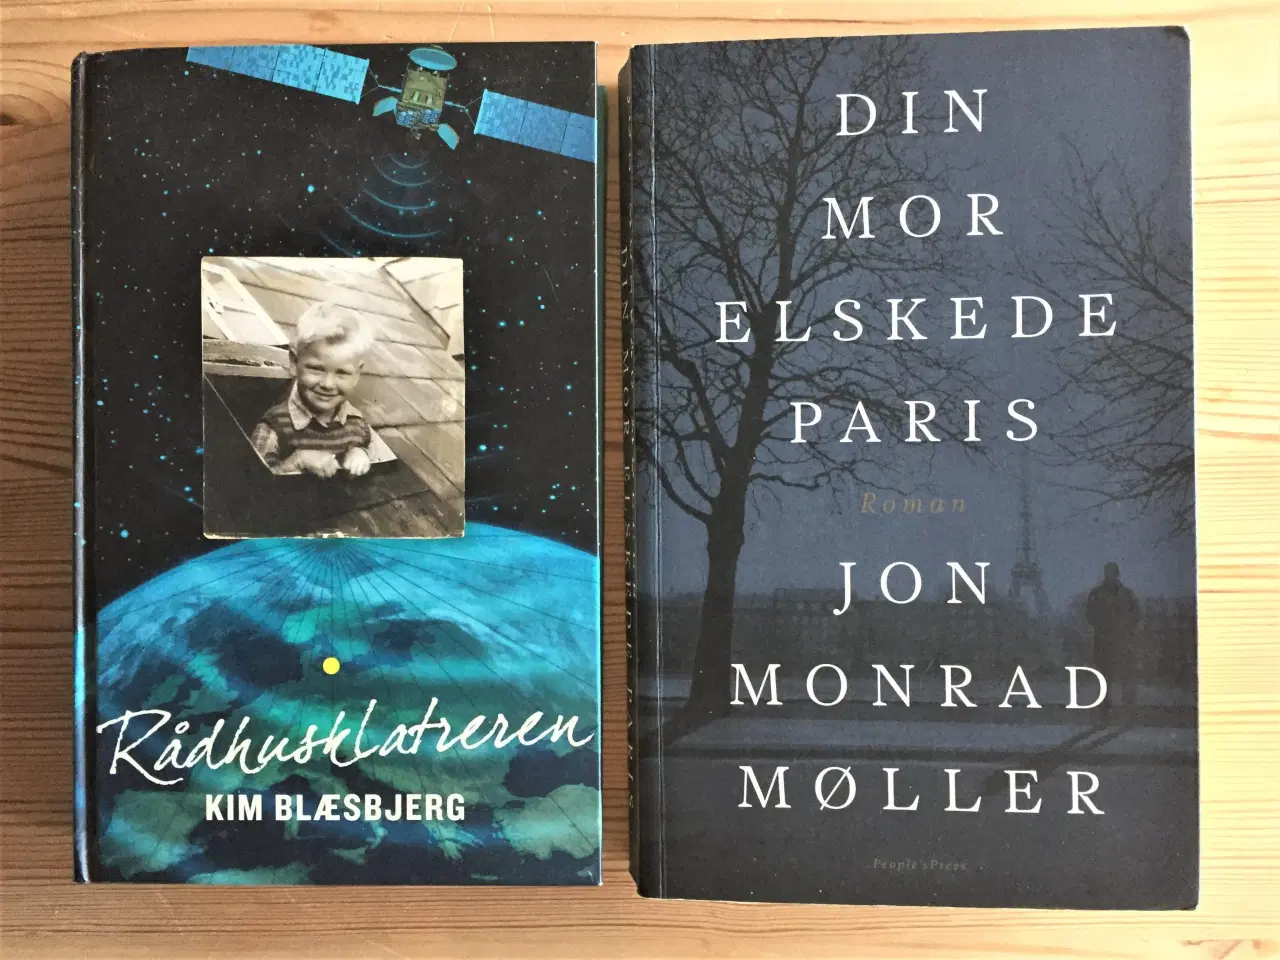 Billede 11 - Romaner og noveller af danske forfattere